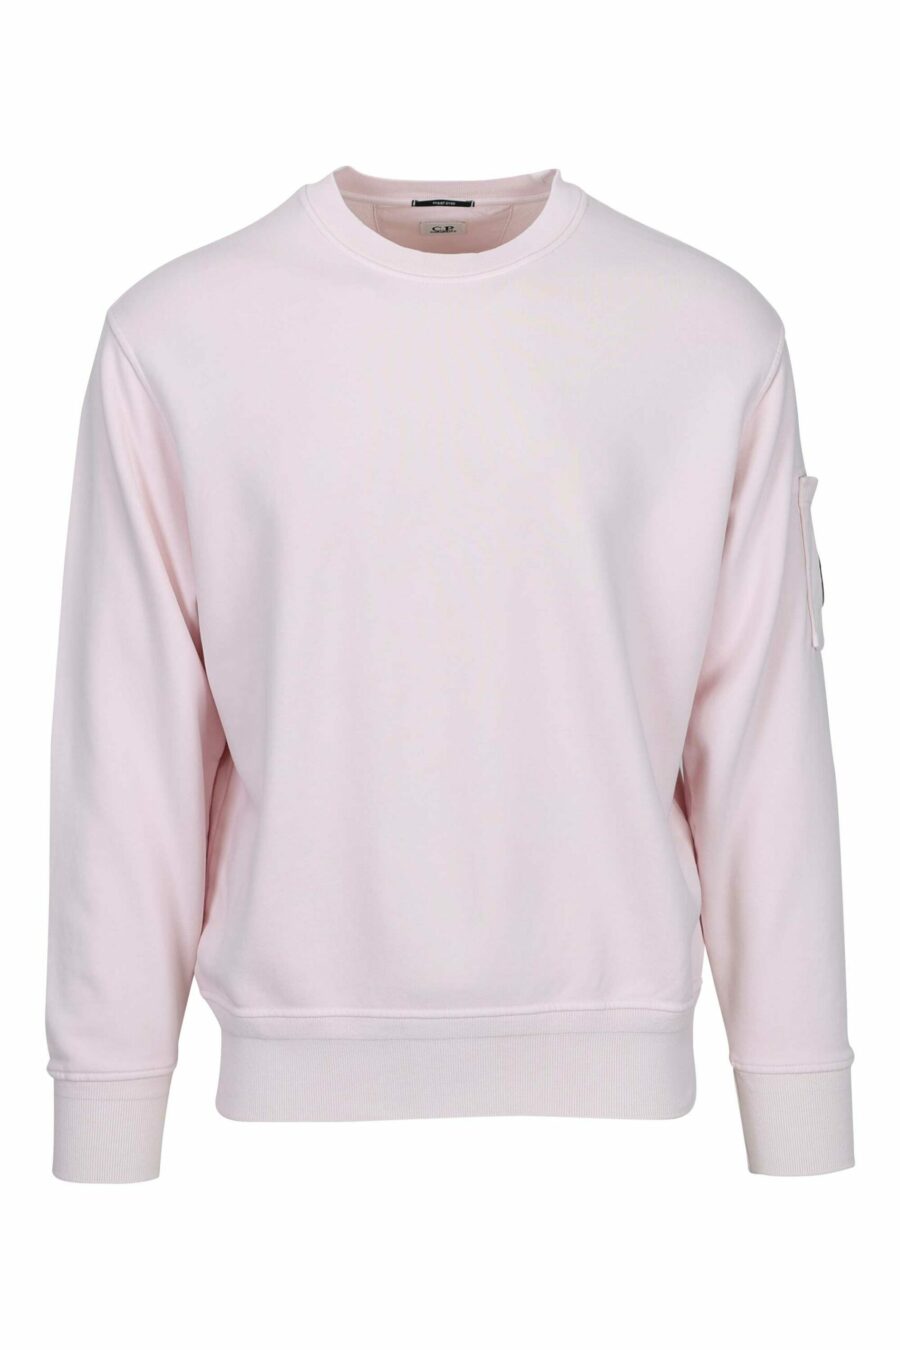 Rosa Sweatshirt mit Tasche und Mini-Logo - 7620943751697 skaliert